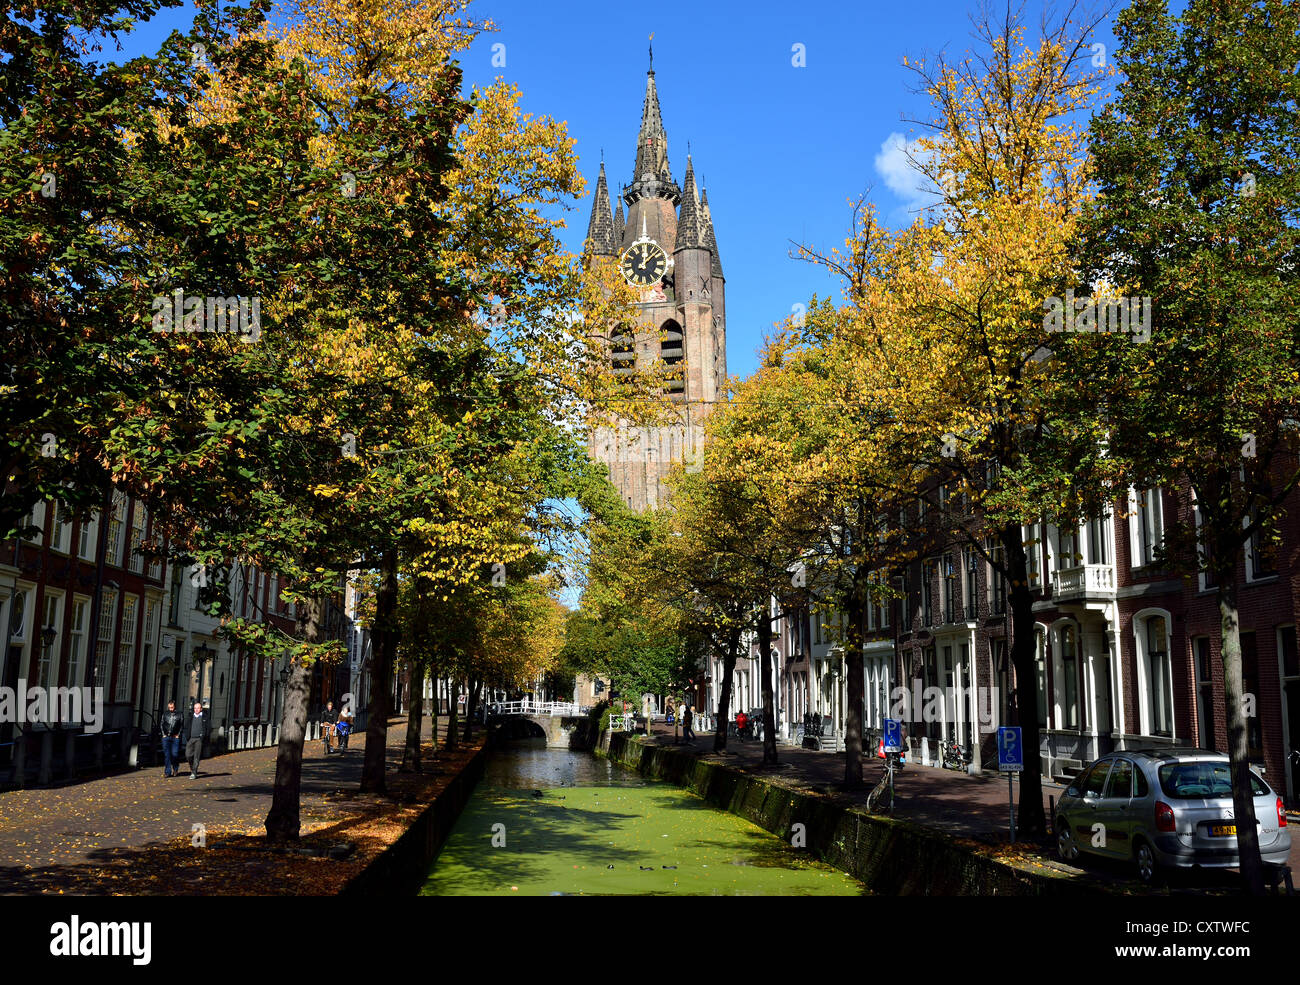 Turm der alten Kirche über Kanal. Delft, Niederlande. Stockfoto